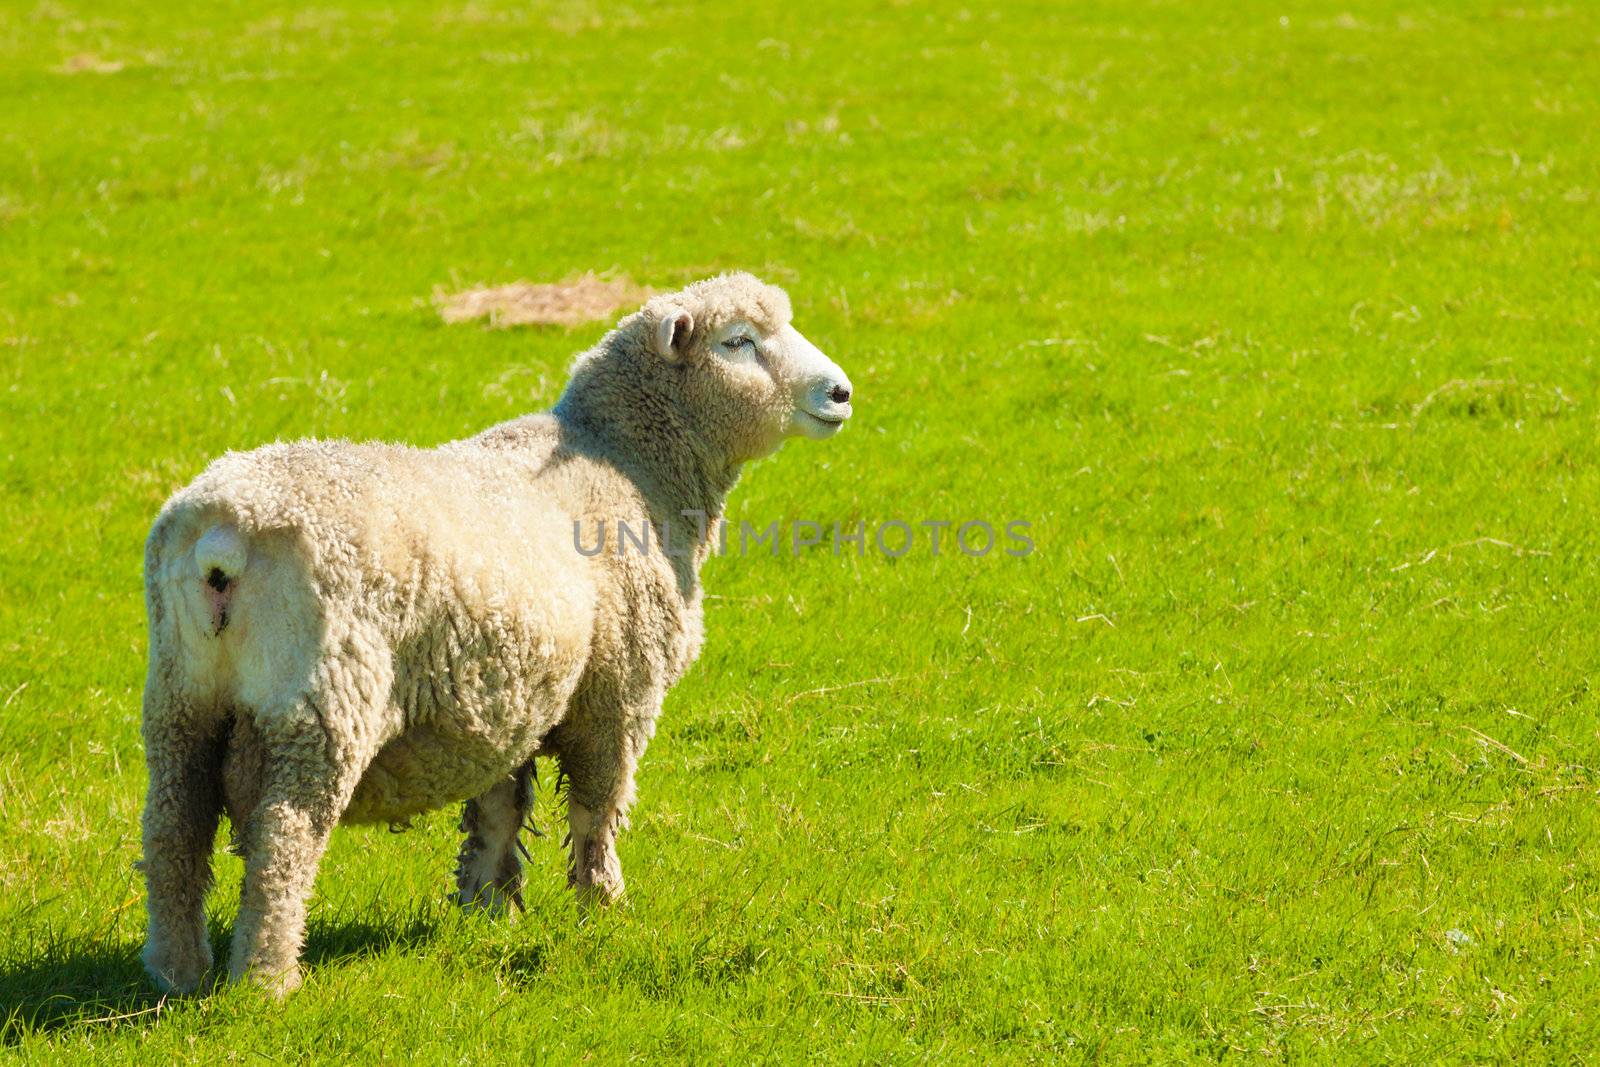 A sheep grazing in a beautiful lush green field